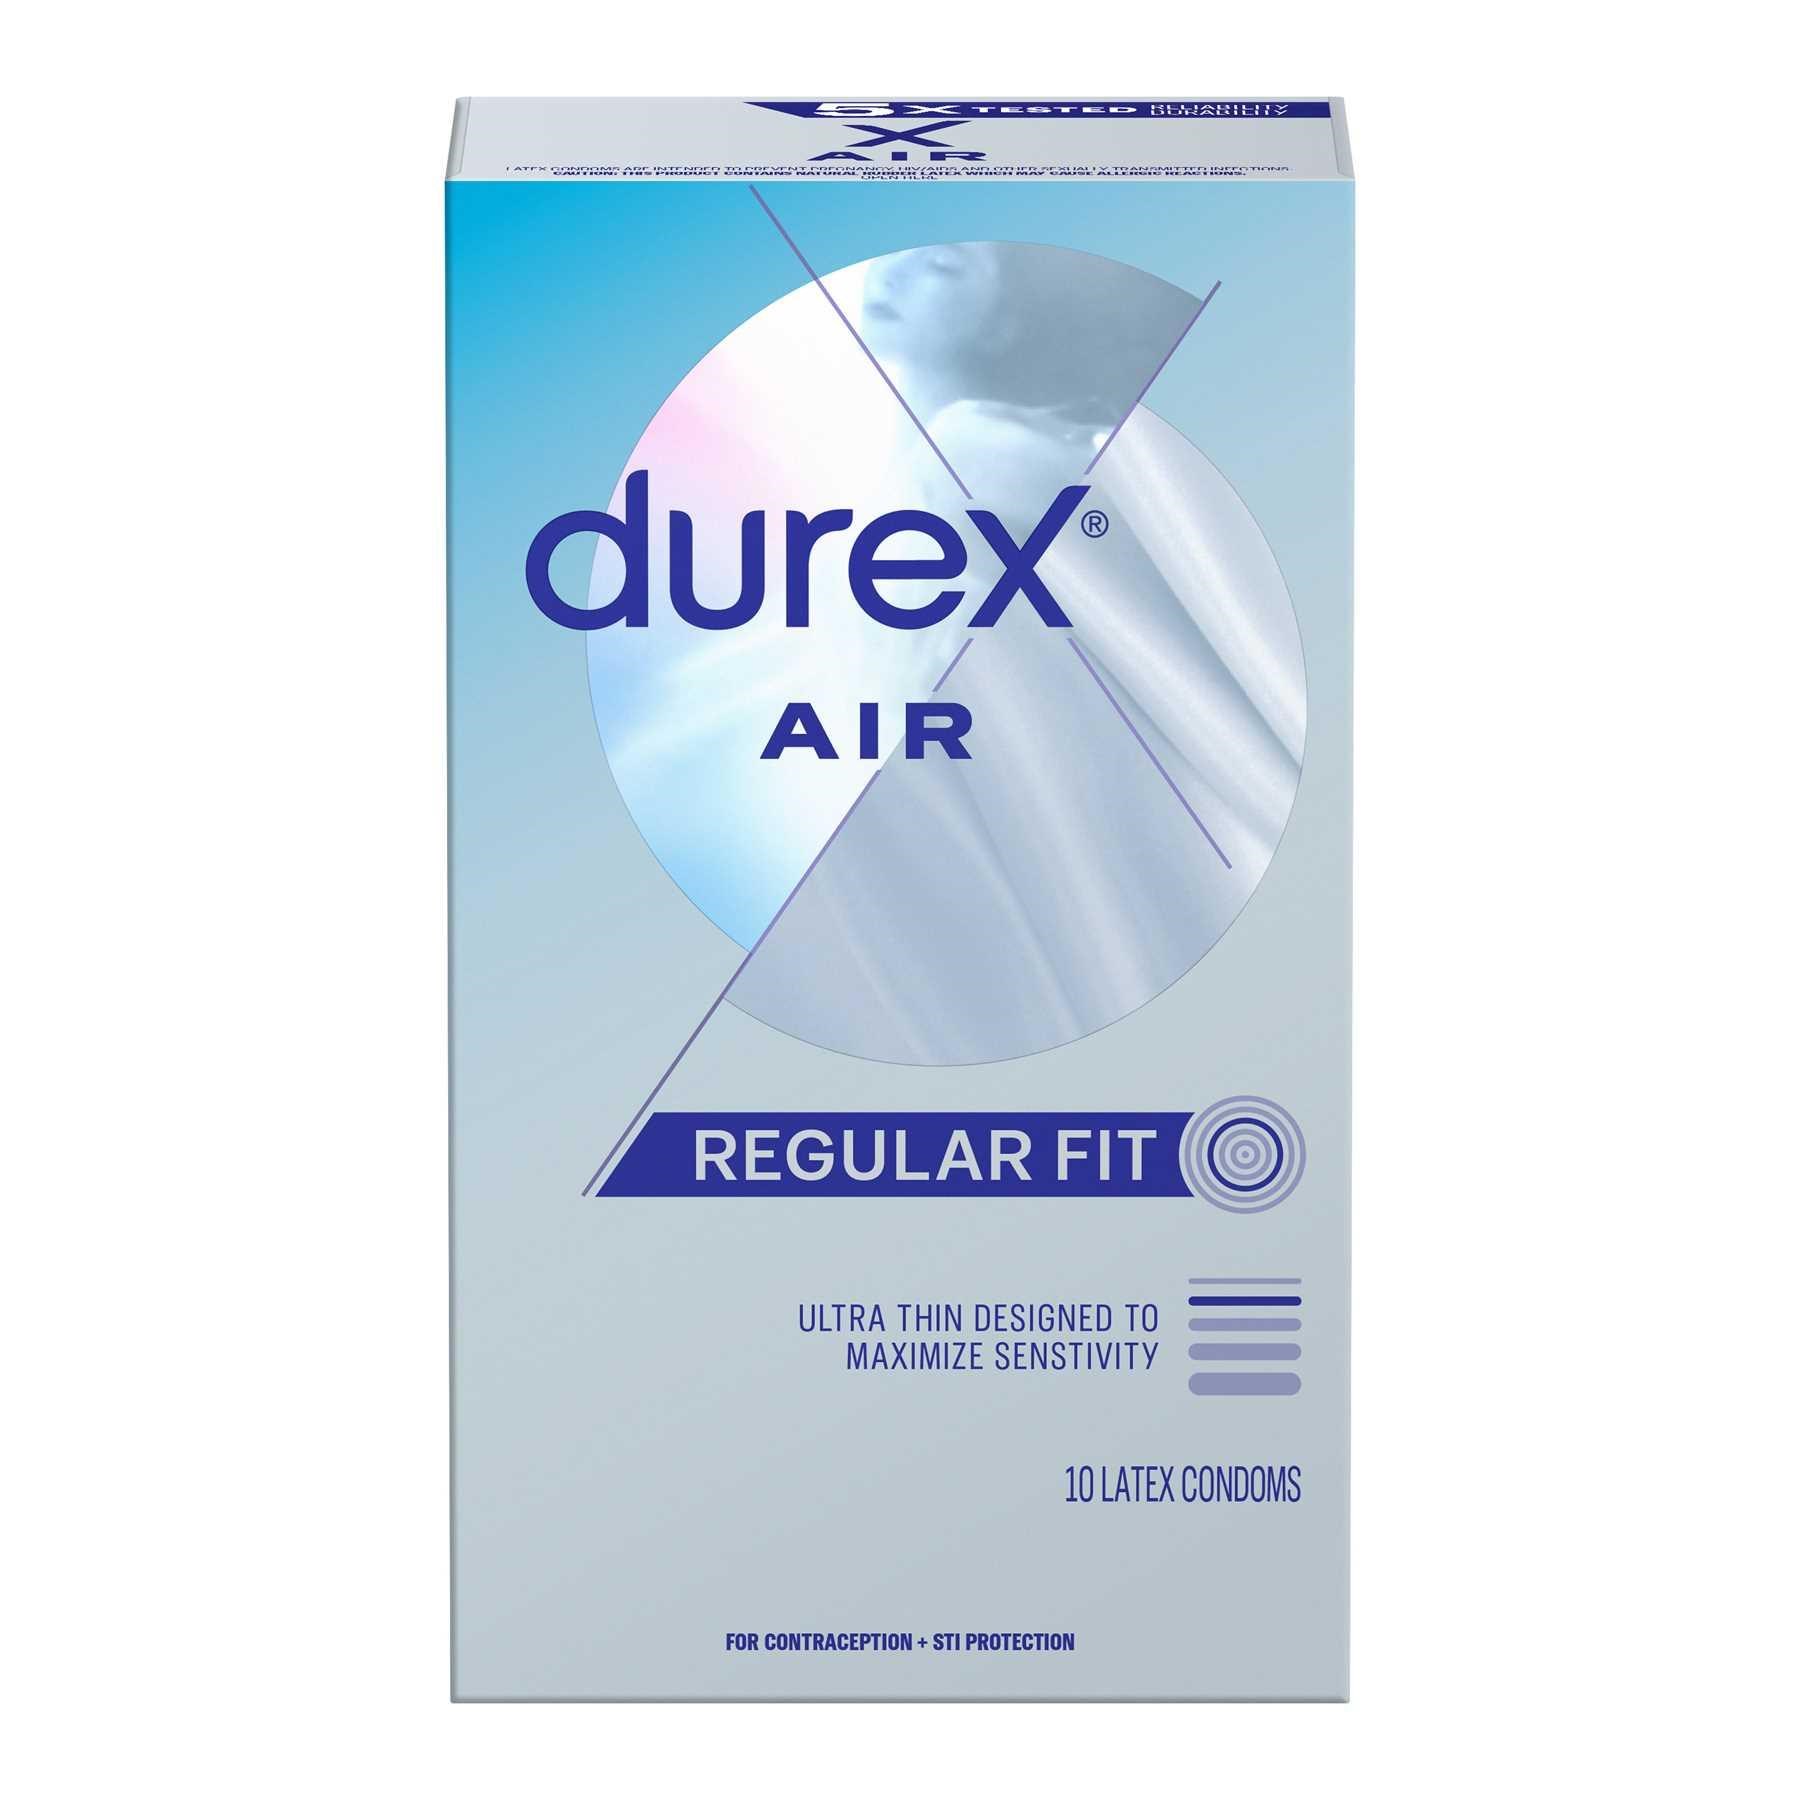 Durex Air Condoms -10 count Box